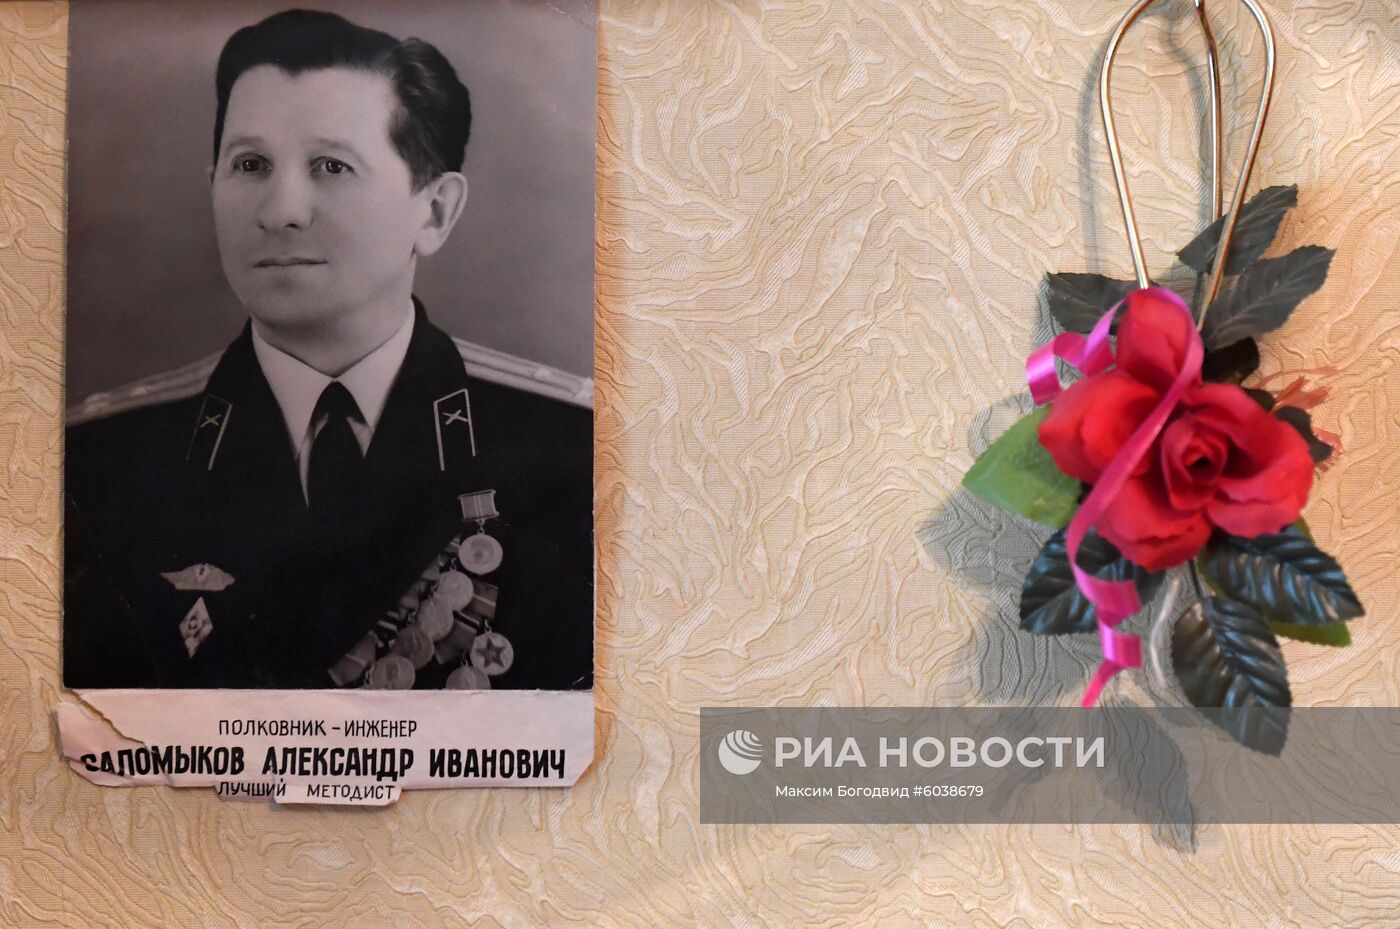 Ветеран Великой Отечественной войны А.И. Саломыков